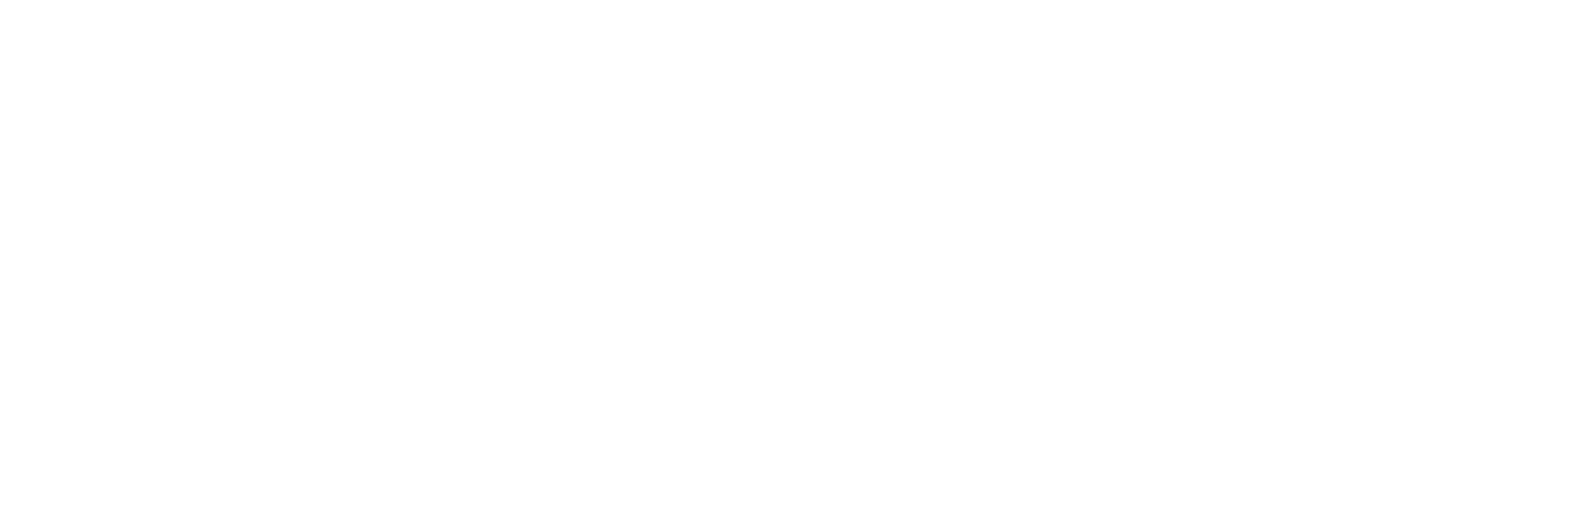 THG (The Hut Group) logo pour fonds sombres (PNG transparent)